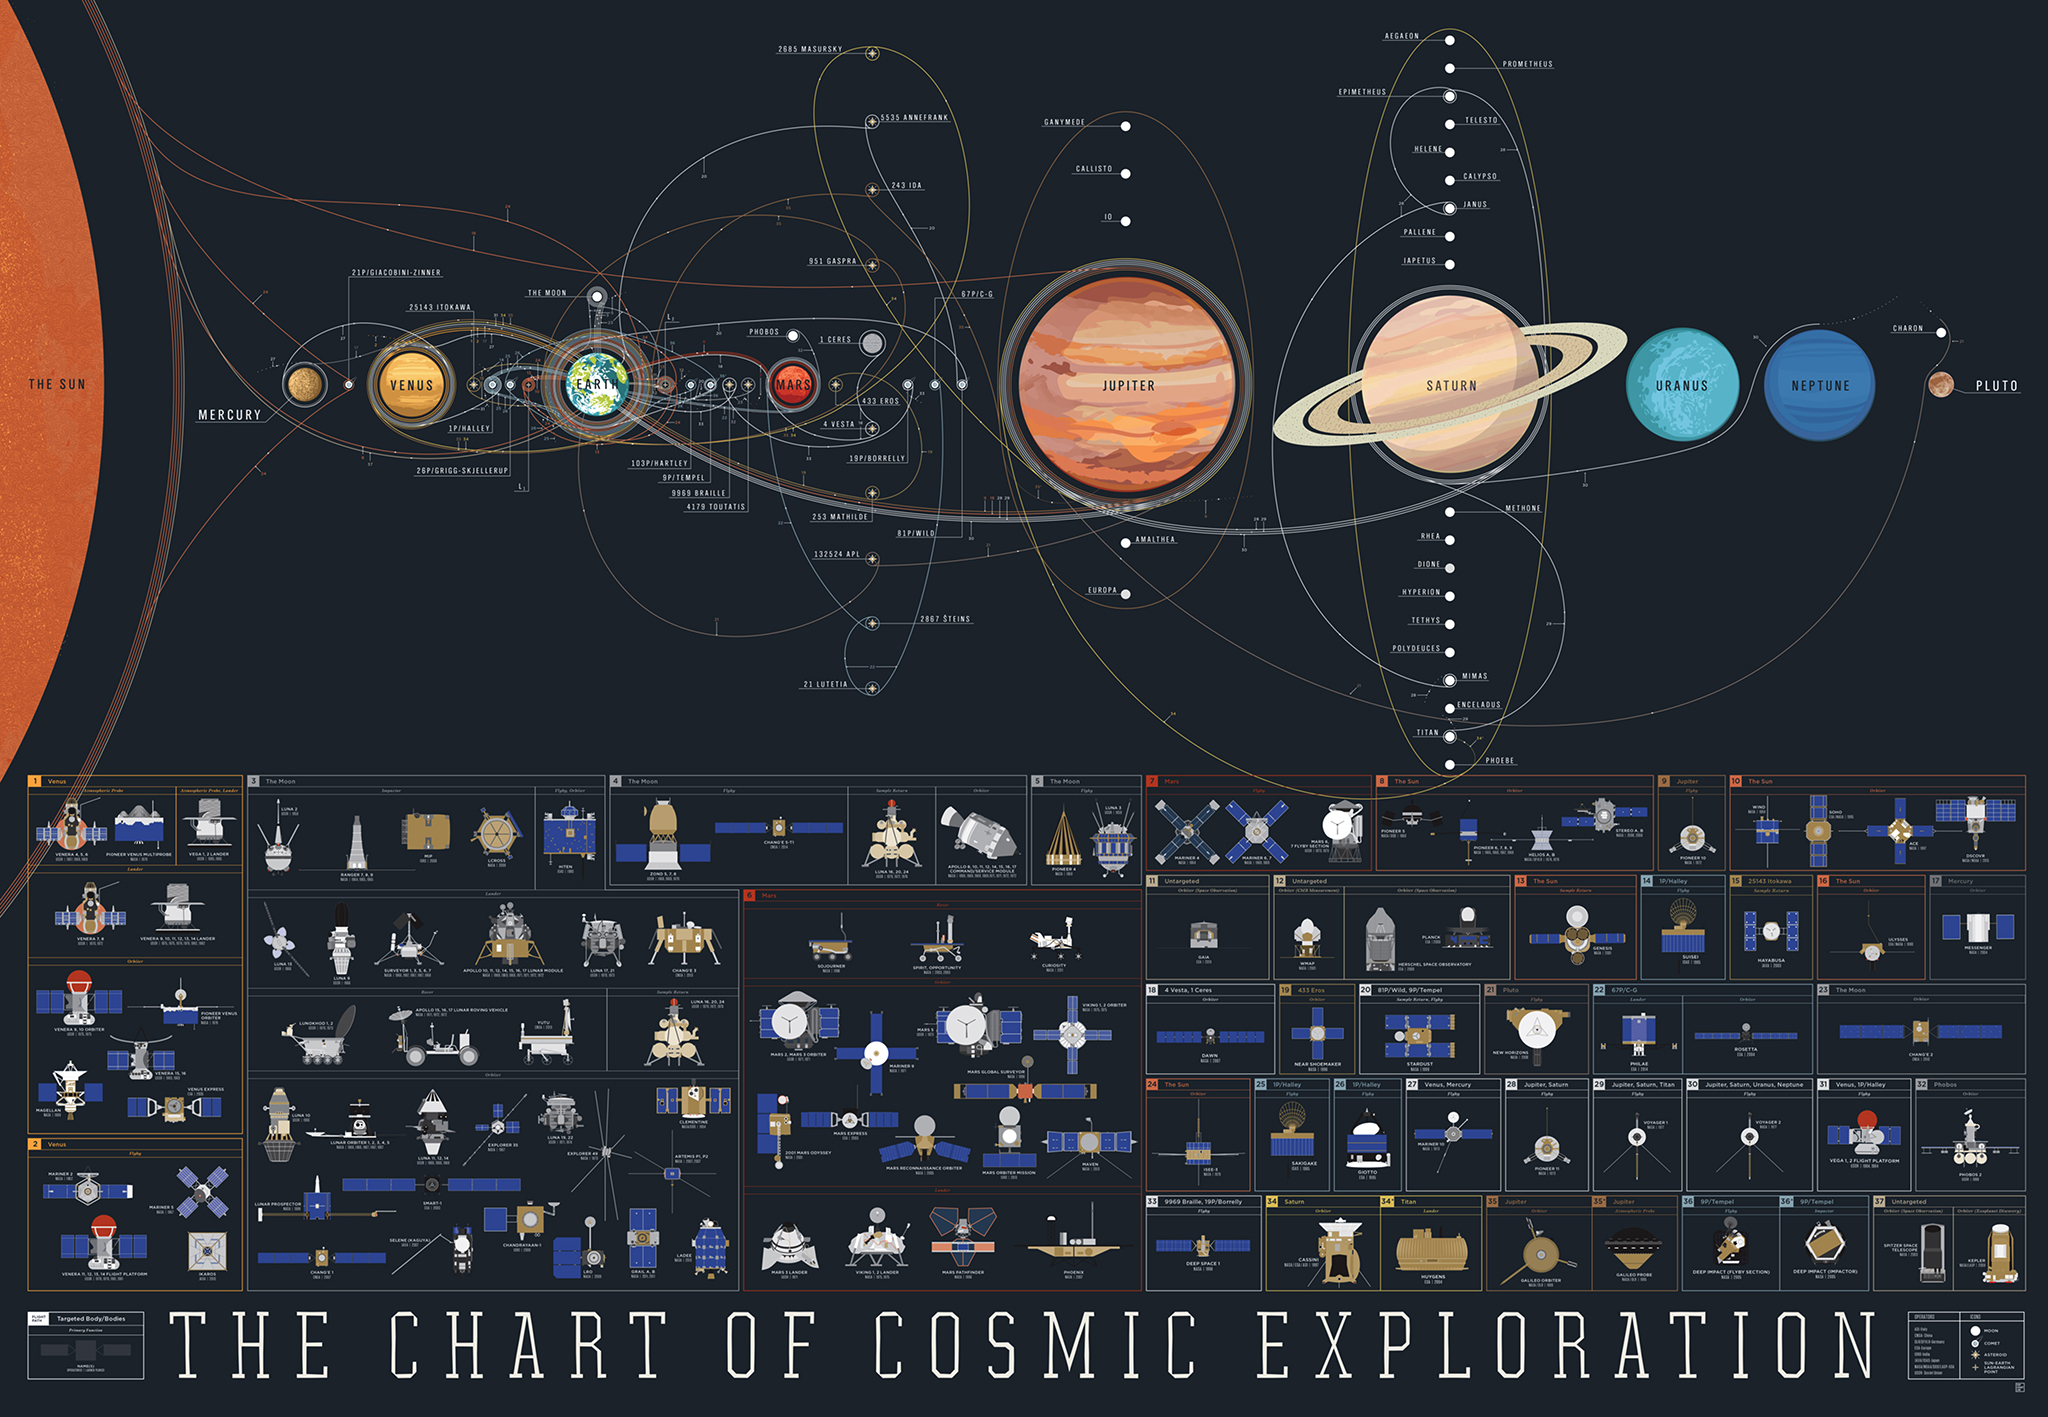 Với biểu đồ khám phá Vũ trụ, bạn sẽ đi sâu hơn vào những câu chuyện tuyệt vời về sự kiện lịch sử của Vũ trụ và vai trò mà nhân loại đã đóng góp trong quá trình khám phá và hiểu biết về nó. Hãy xem hình ảnh liên quan để khám phá thêm những điều thú vị về Vũ trụ và nhân loại.